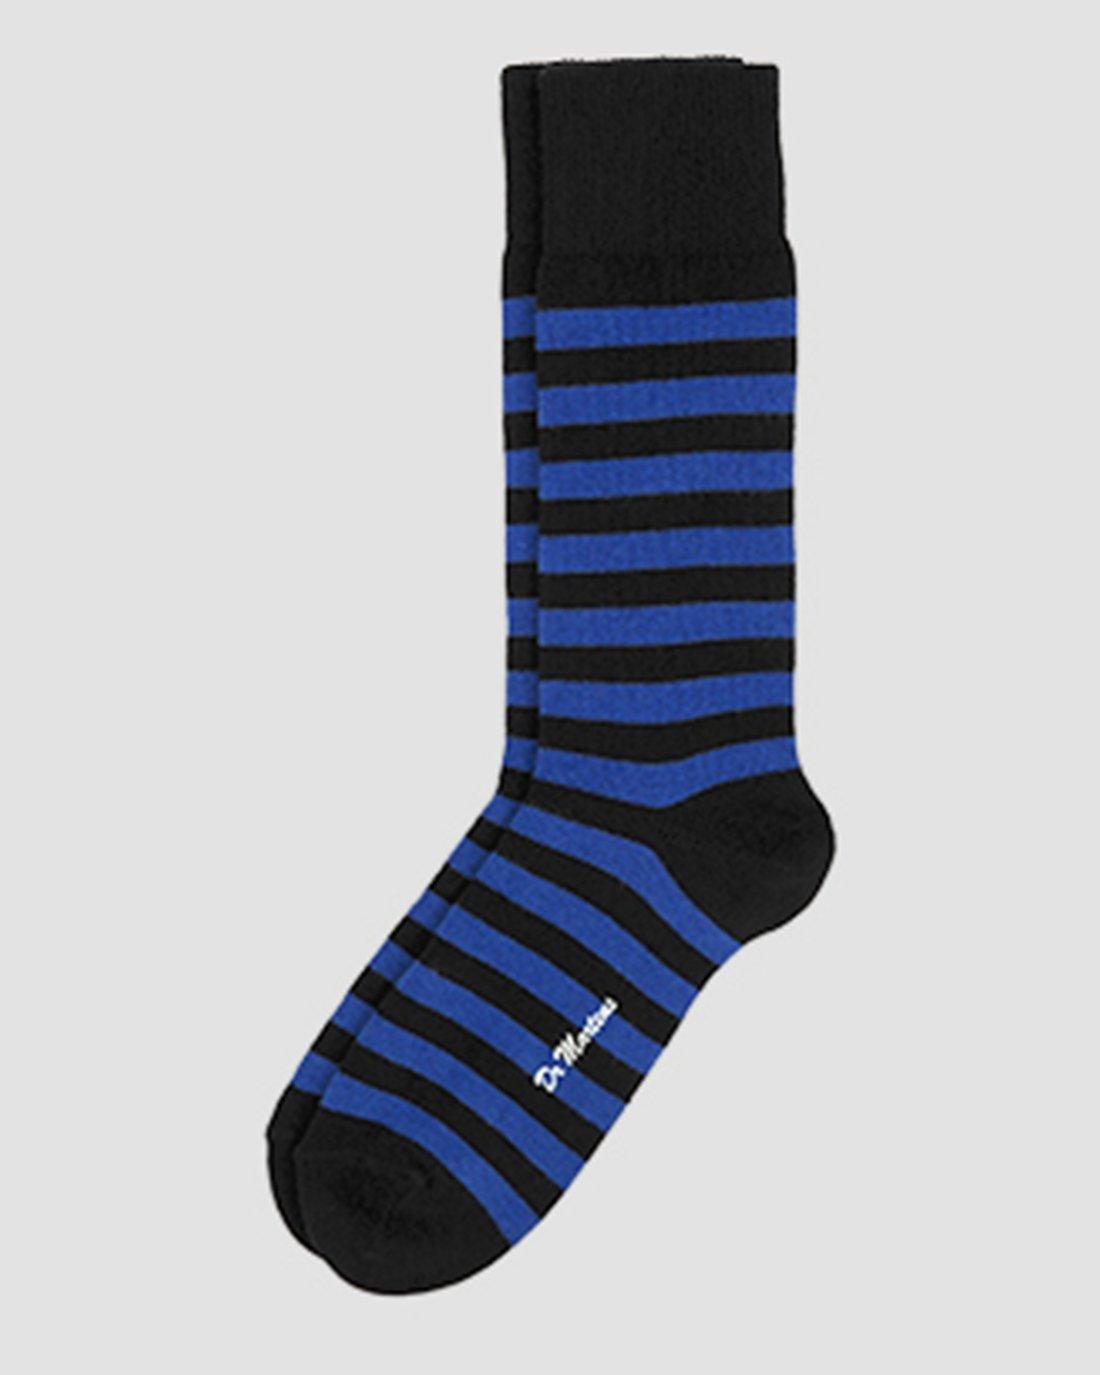 BLUE+BLACK | Socks | Dr. Martens